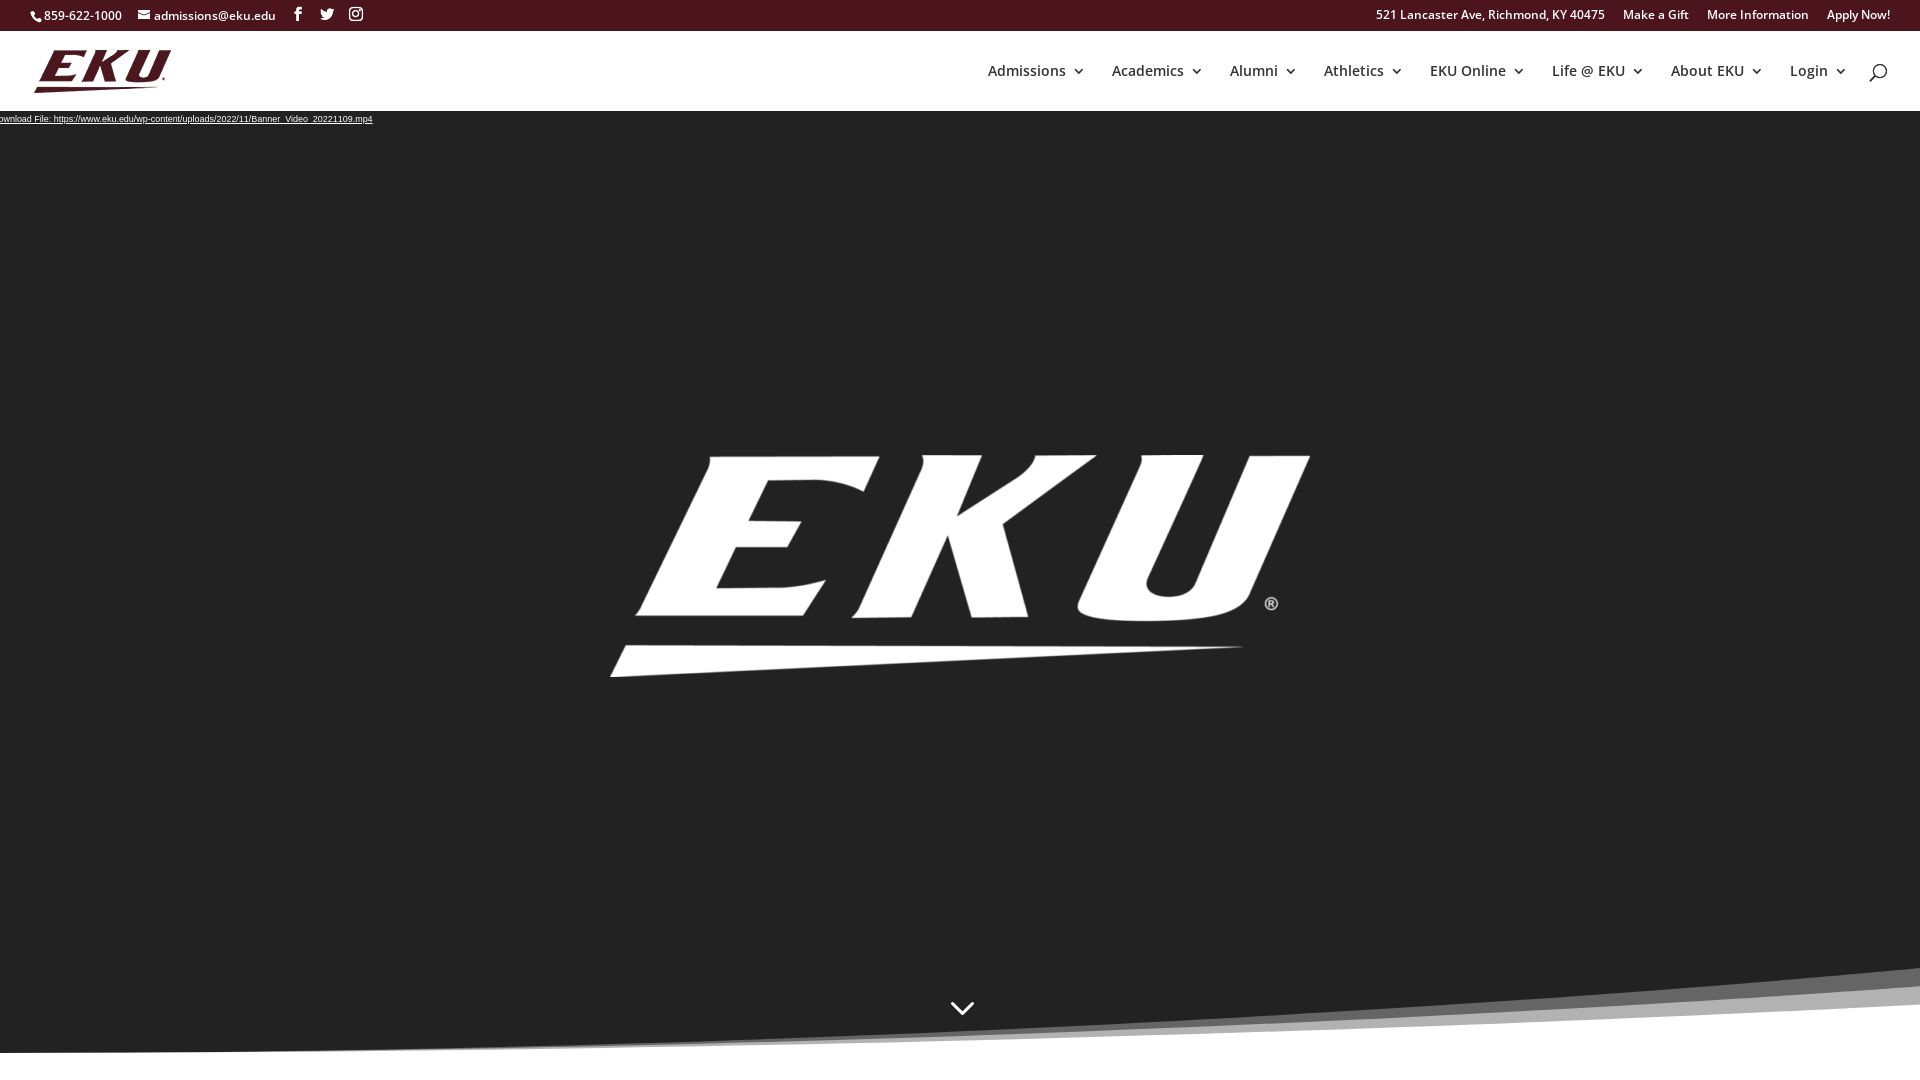 Website status eku.edu is   ONLINE